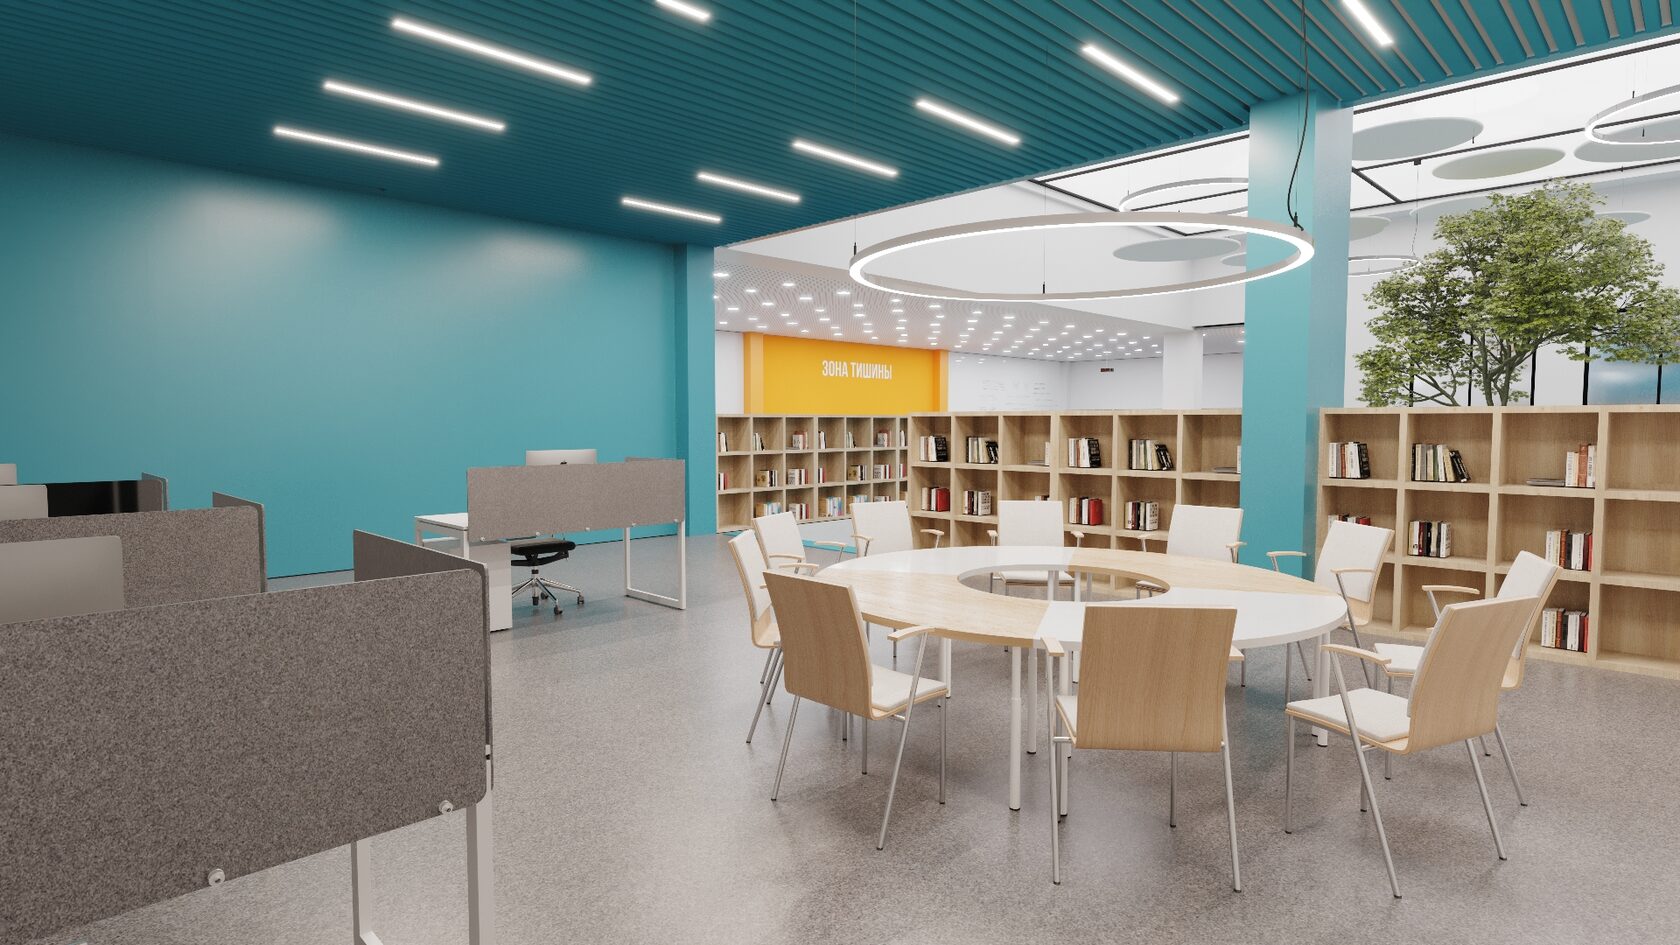 Архитектура и дизайн библиотек: впечатляющие библиотечные здания мира 2022